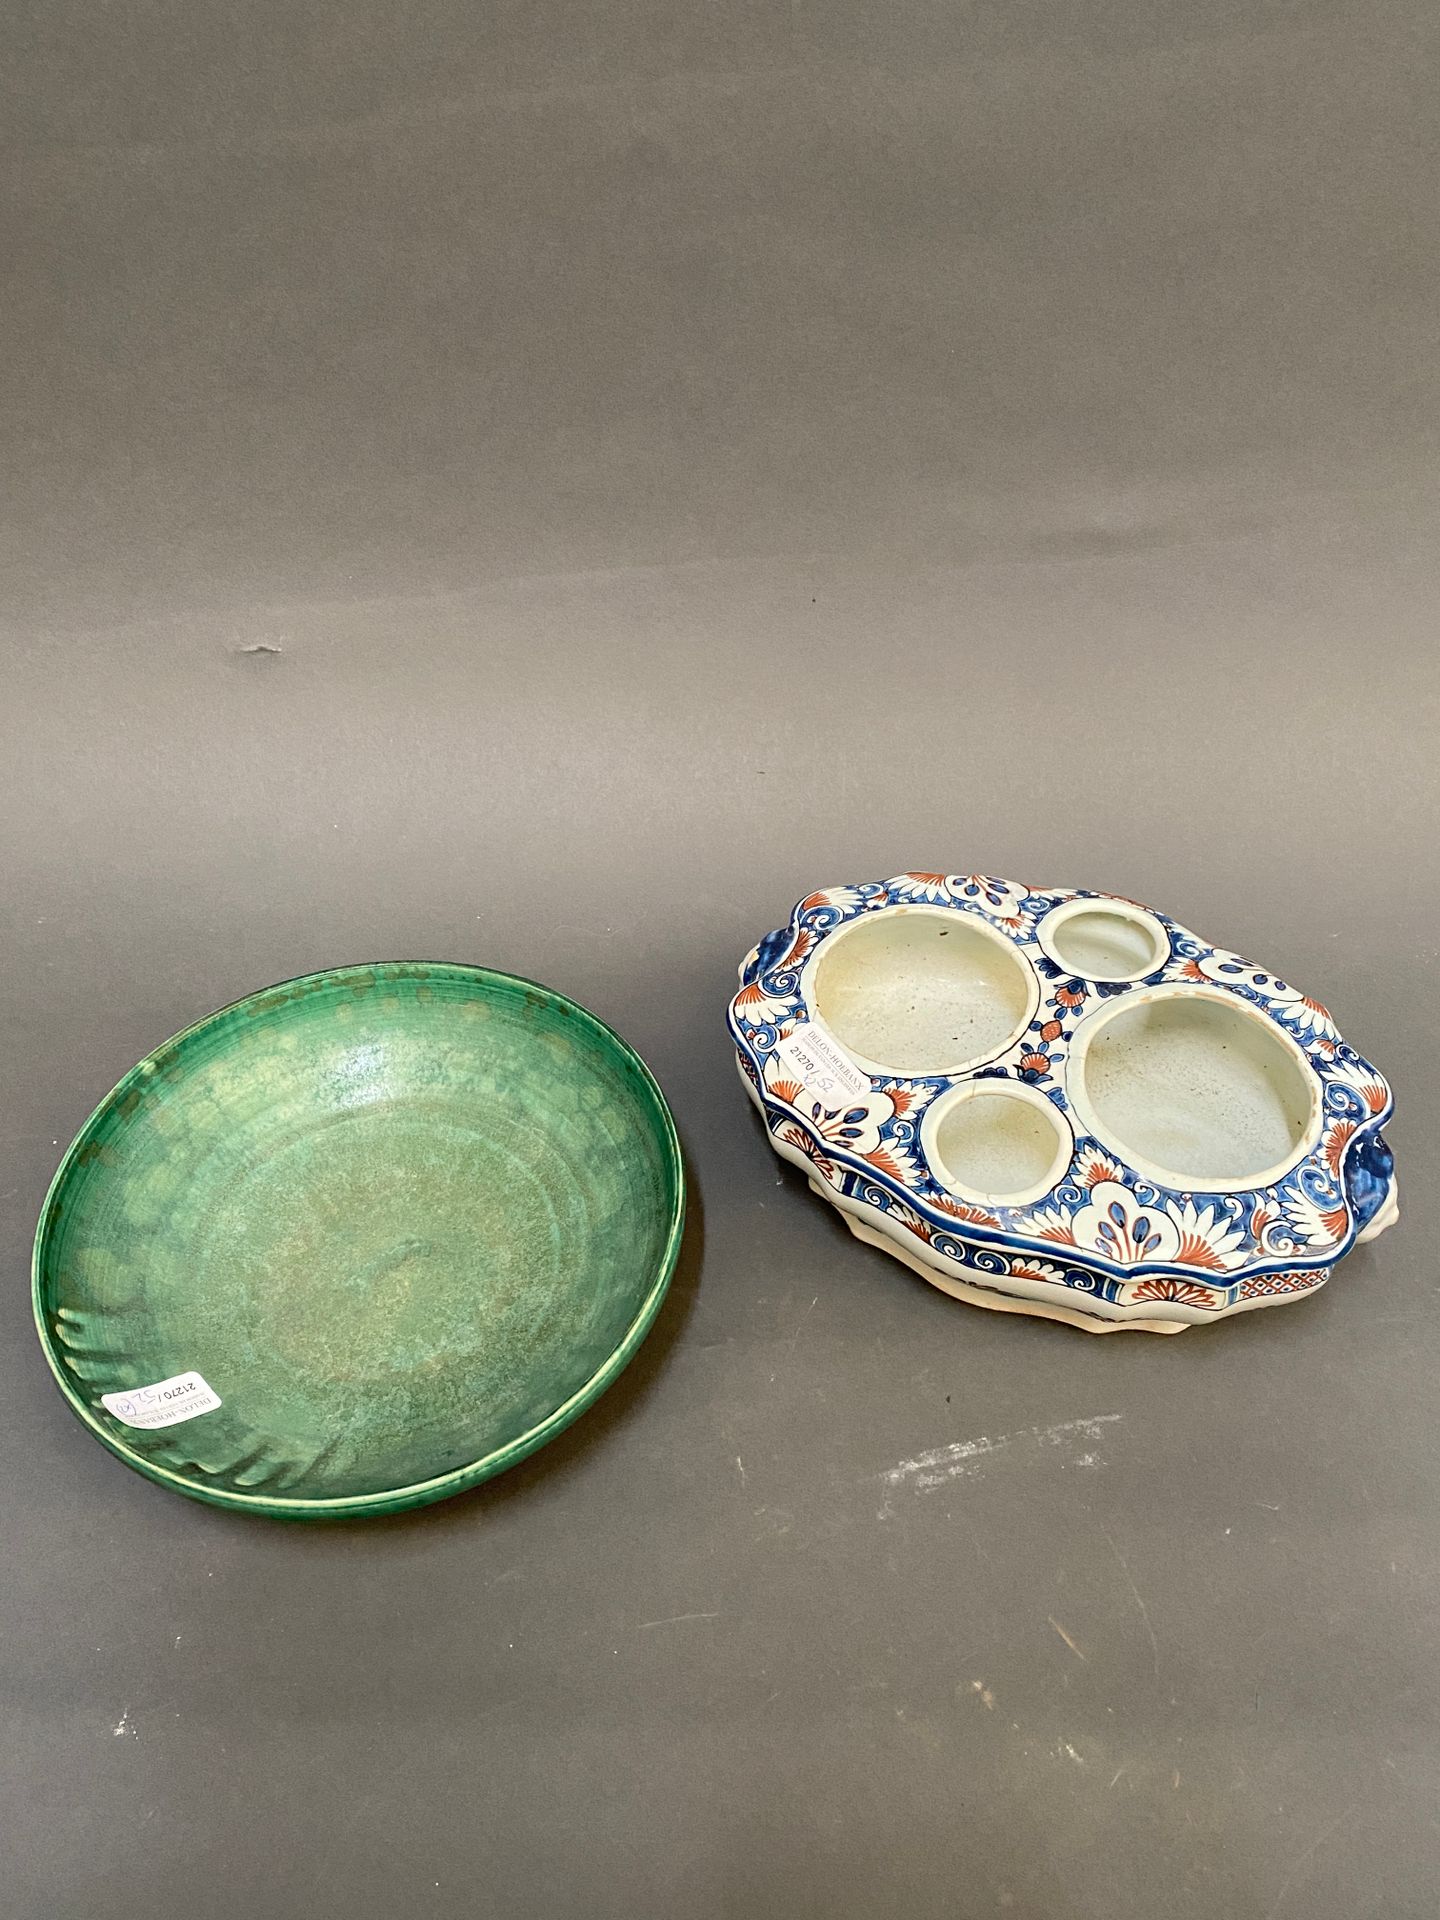 Null 绿色背景的陶瓷碗

直径：22.5厘米

卢昂装饰陶器醋罐联框